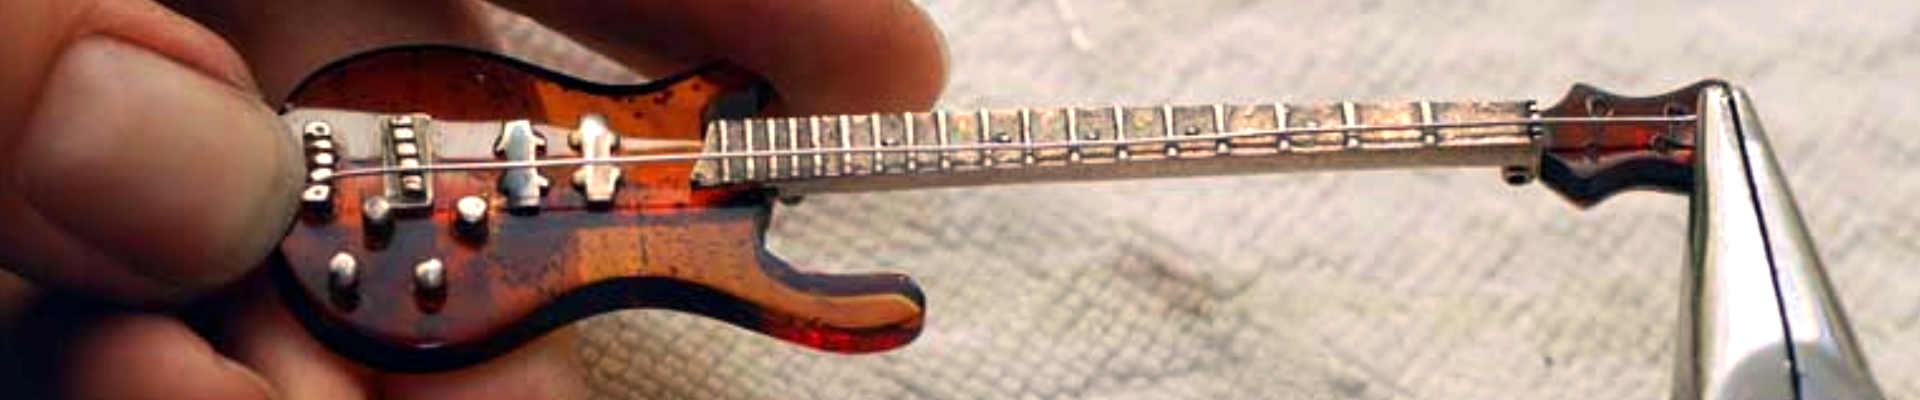 Spannen einer Saite aus Silberdraht auf eine E-Gitarren-Brosche aus Bernstein, Foto: Stefan Płota